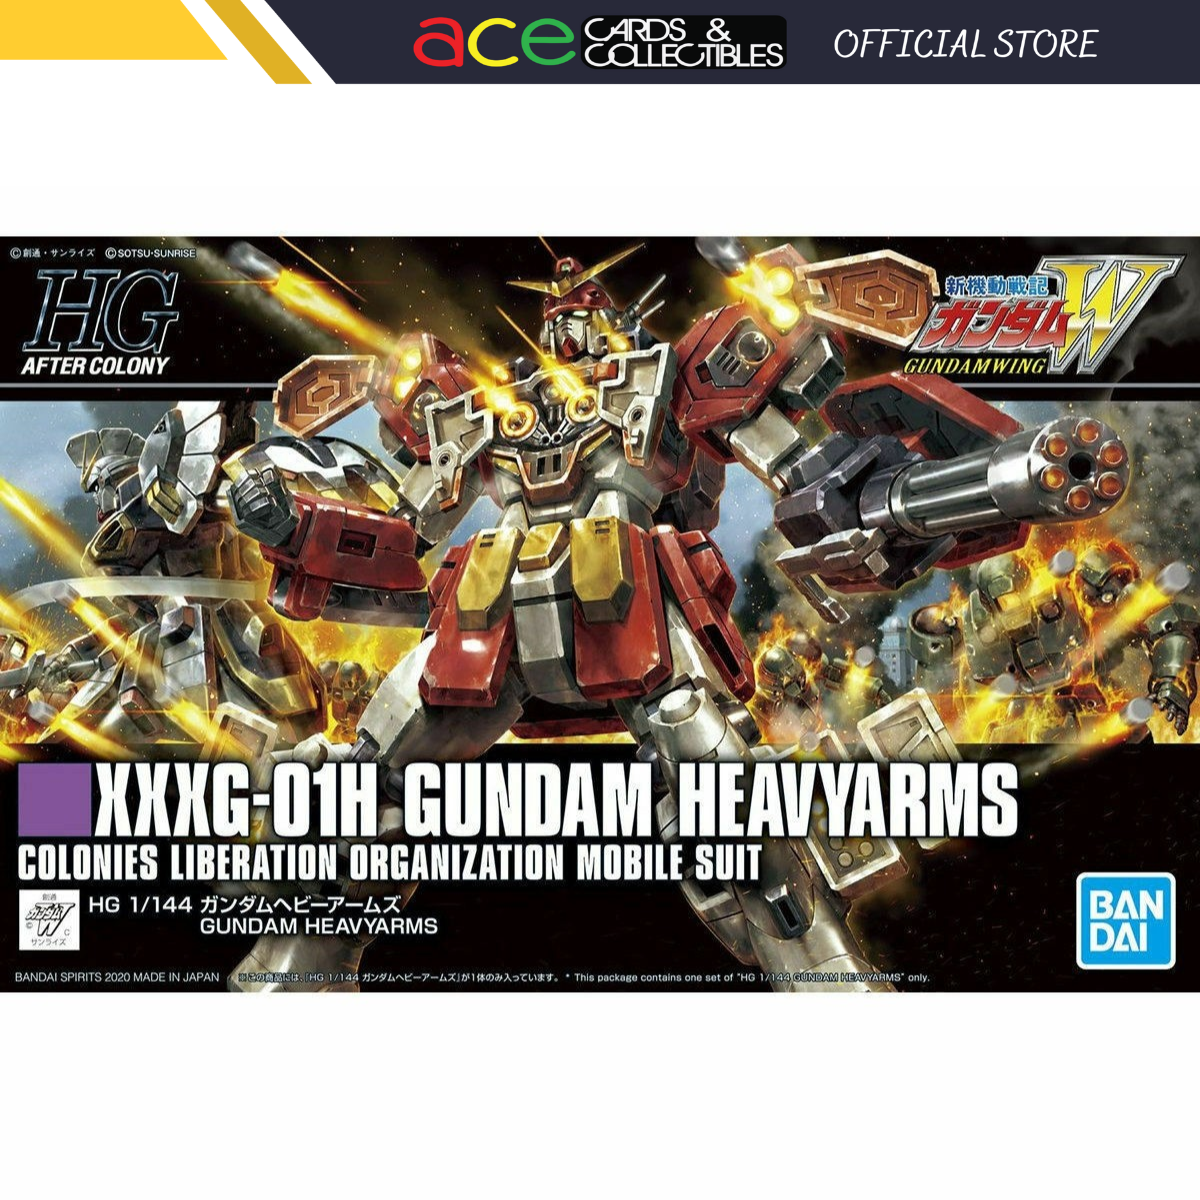 Gunpla HG 1/144 Gundam Heavyarms-Bandai-Ace Cards & Collectibles